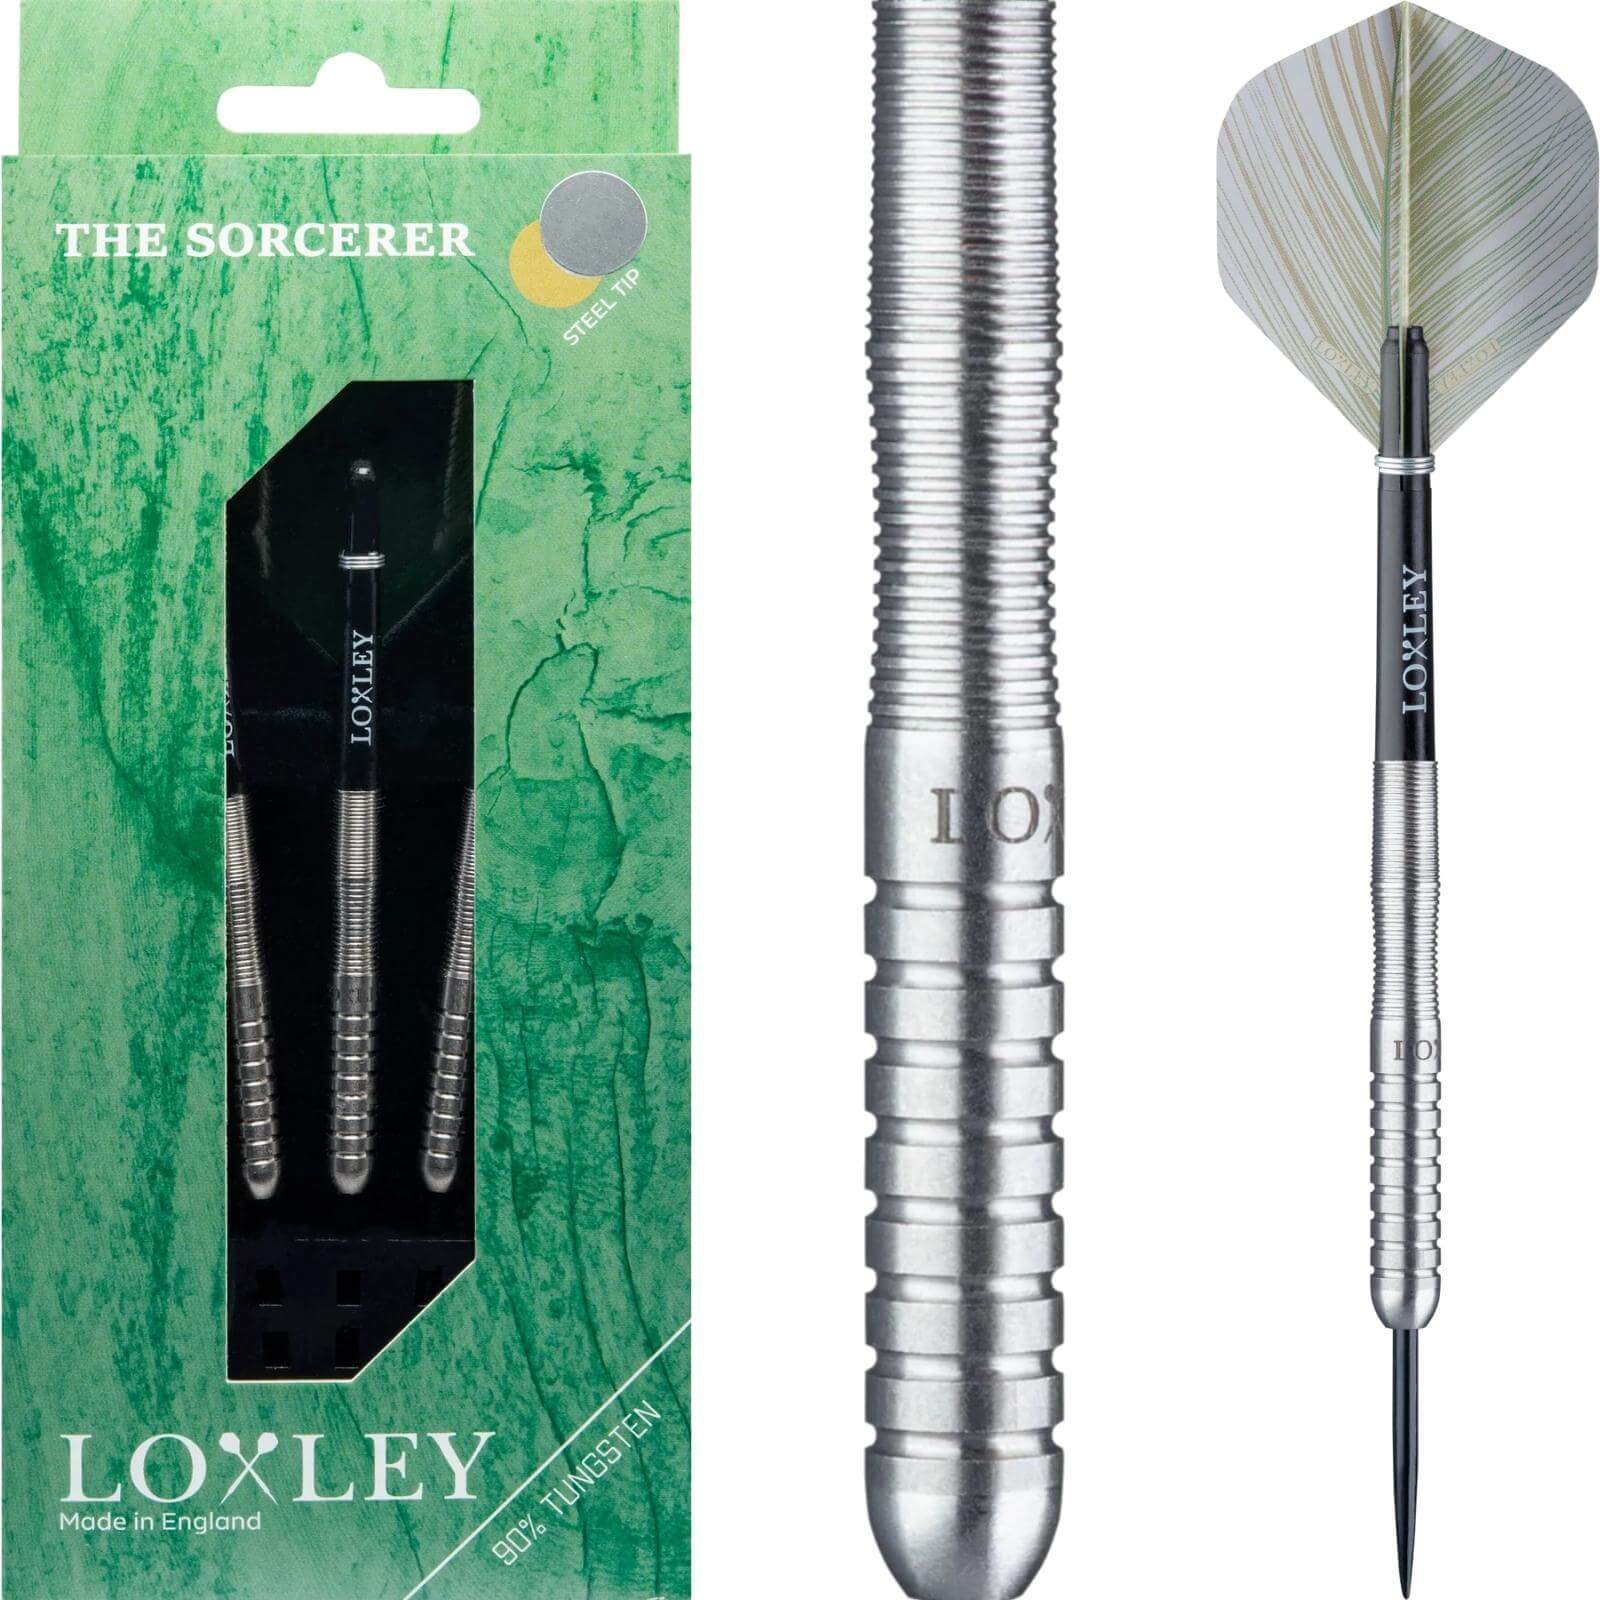 Darts - Loxley - The Sorcerer Darts - Steel Tip - 90% Tungsten - 21g 23g 